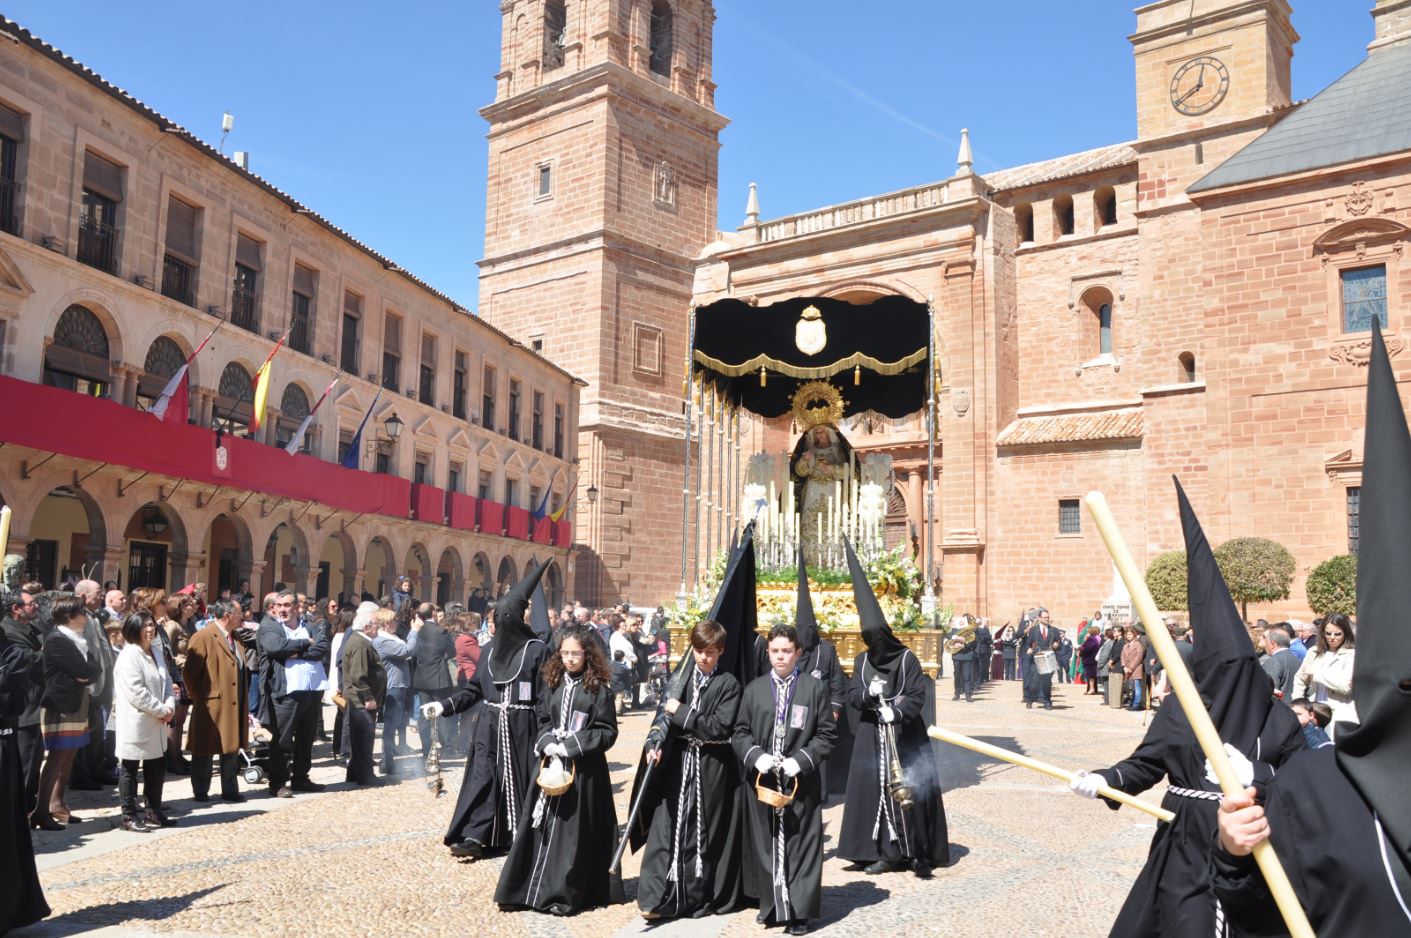 Los alojamientos turísticos de Villanueva de los Infantes alcanzan máxima ocupación durante la Semana Santa